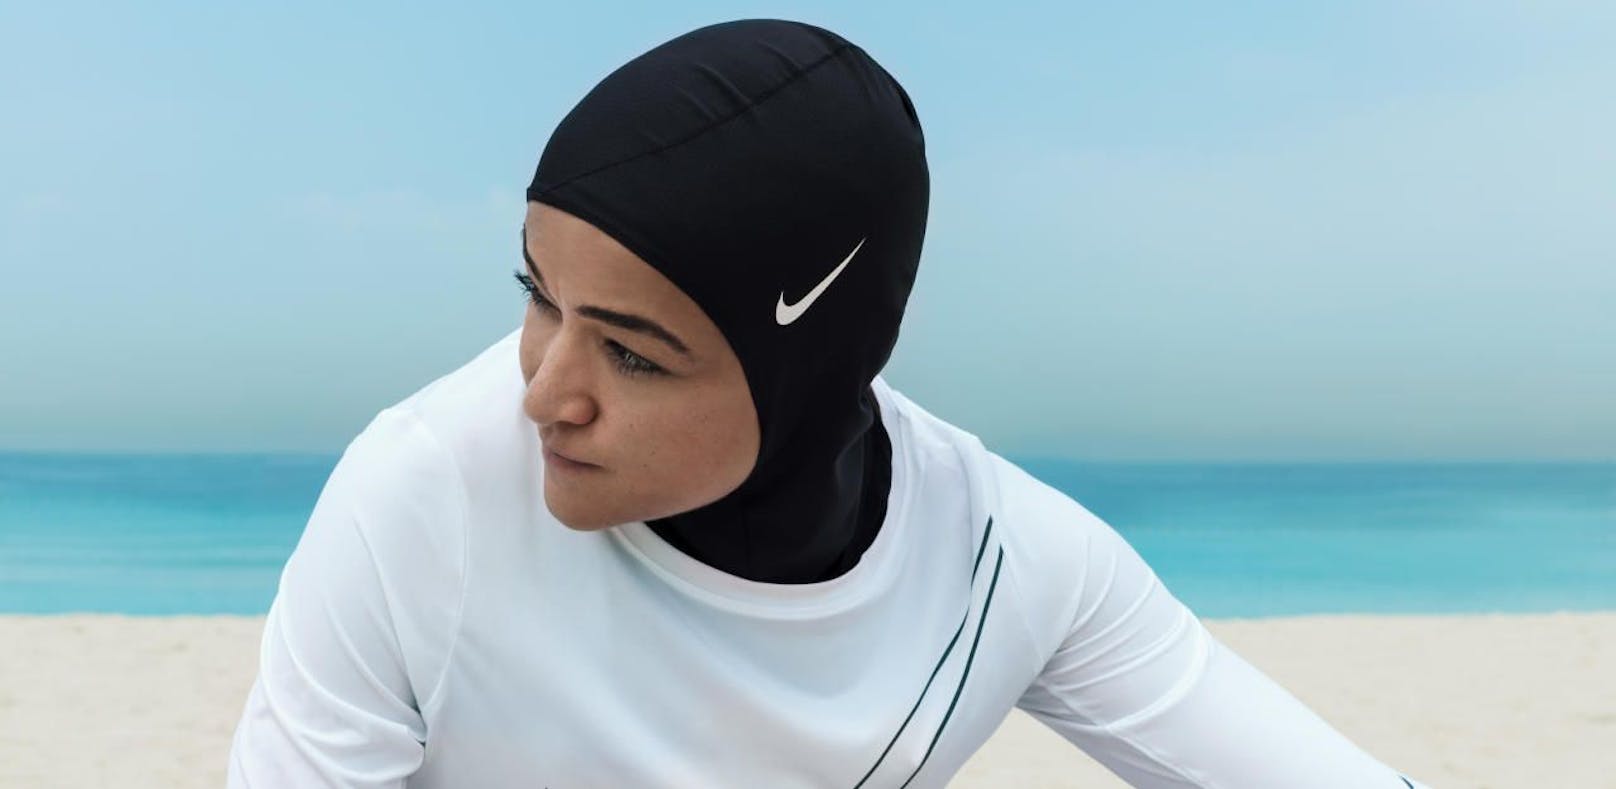 Nike ist bislang der einzig große Sportartikelhersteller, der ein Kopftuch anbietet.